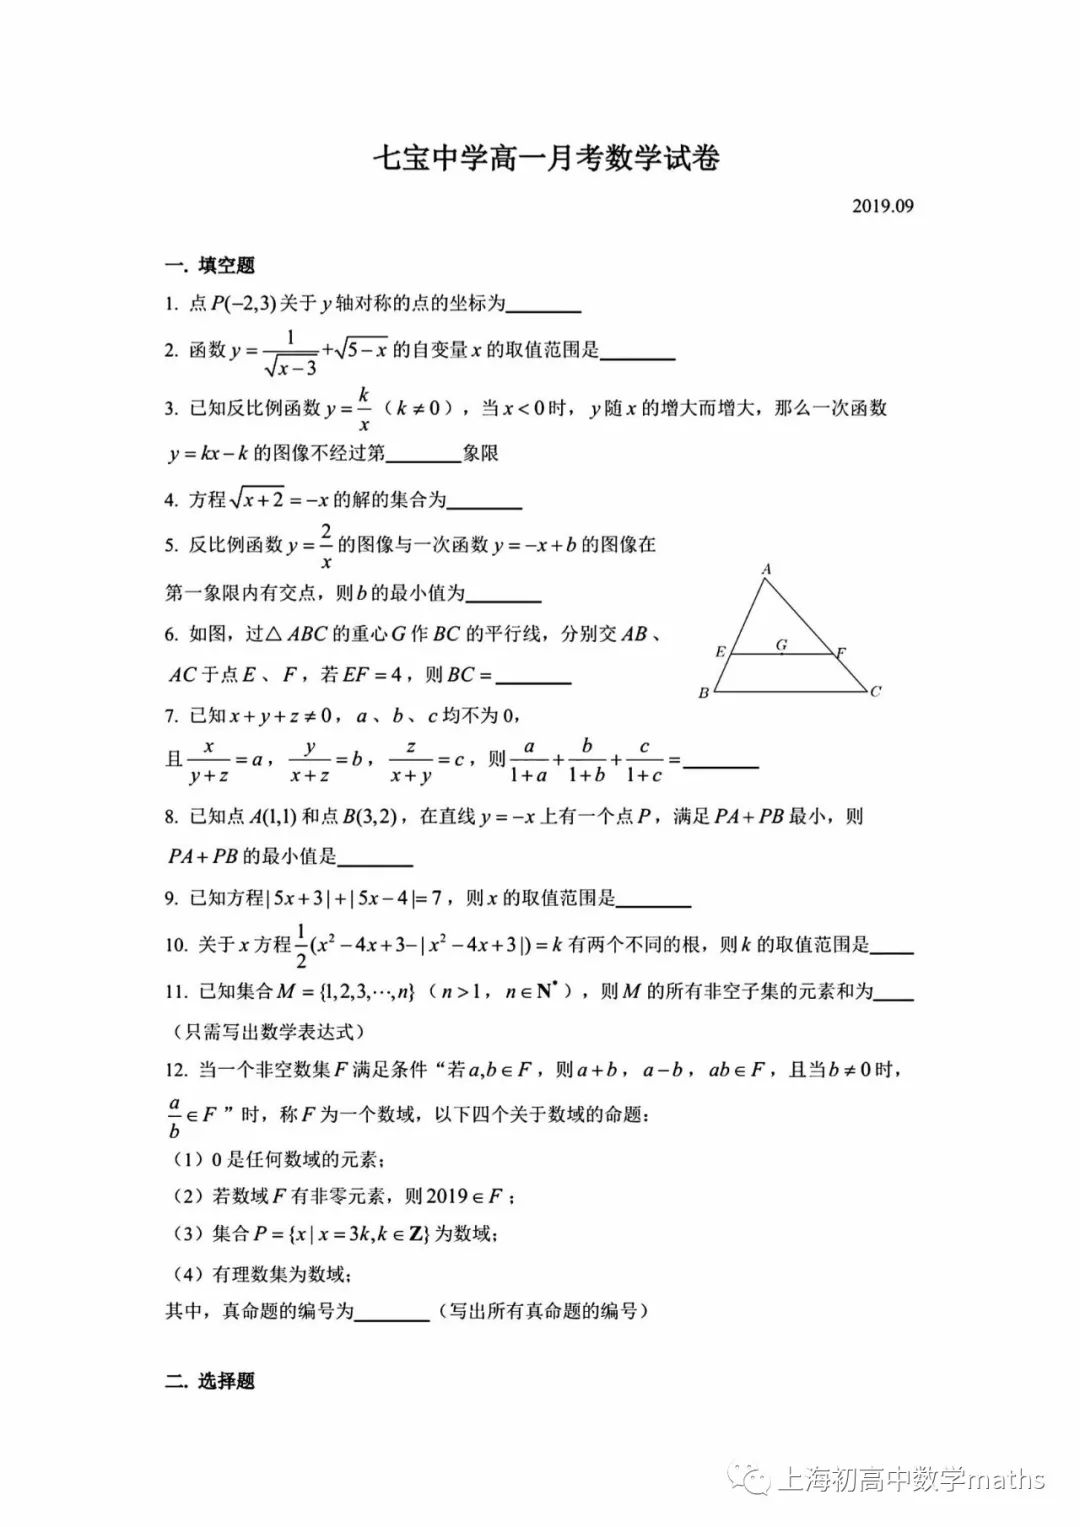 七宝中学高一数学试卷 上海初高中数学maths 微信公众号文章阅读 Wemp